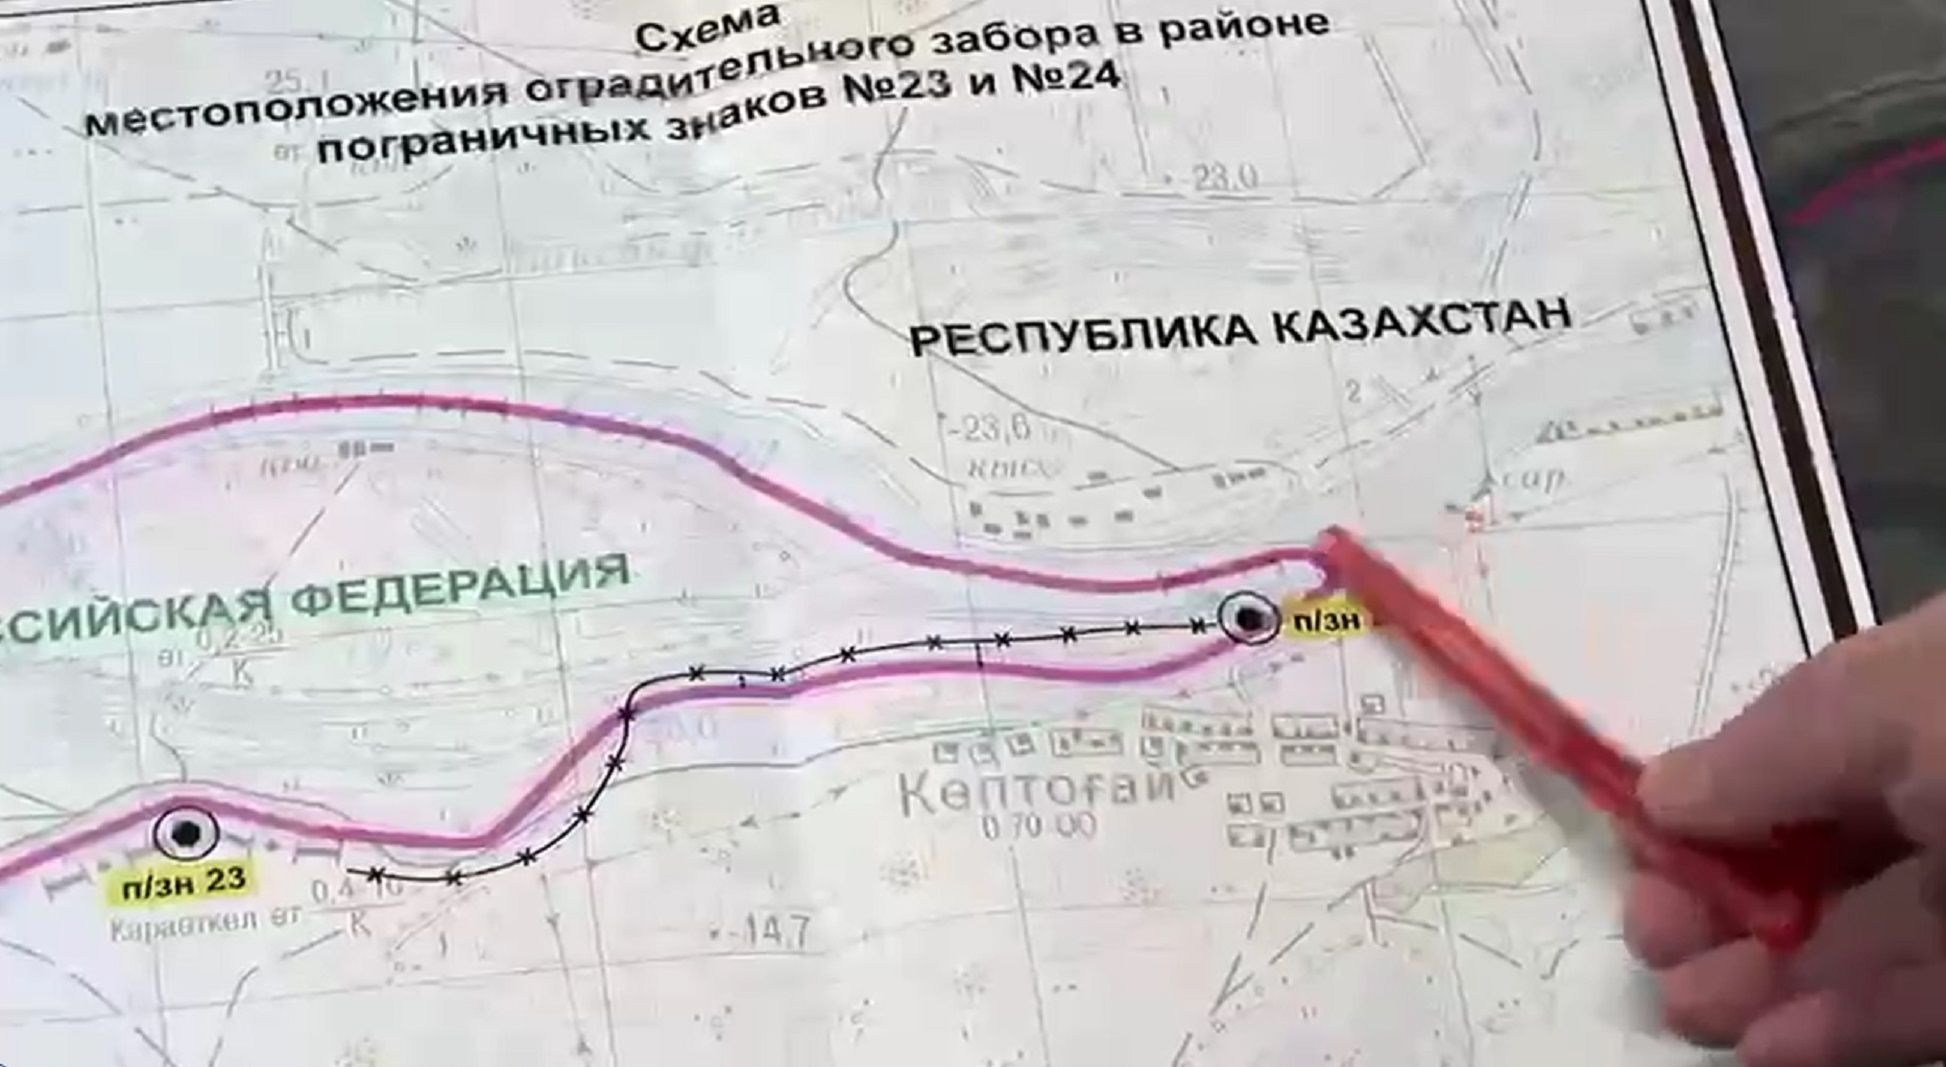 Карта с линией границы близ села Коптогай